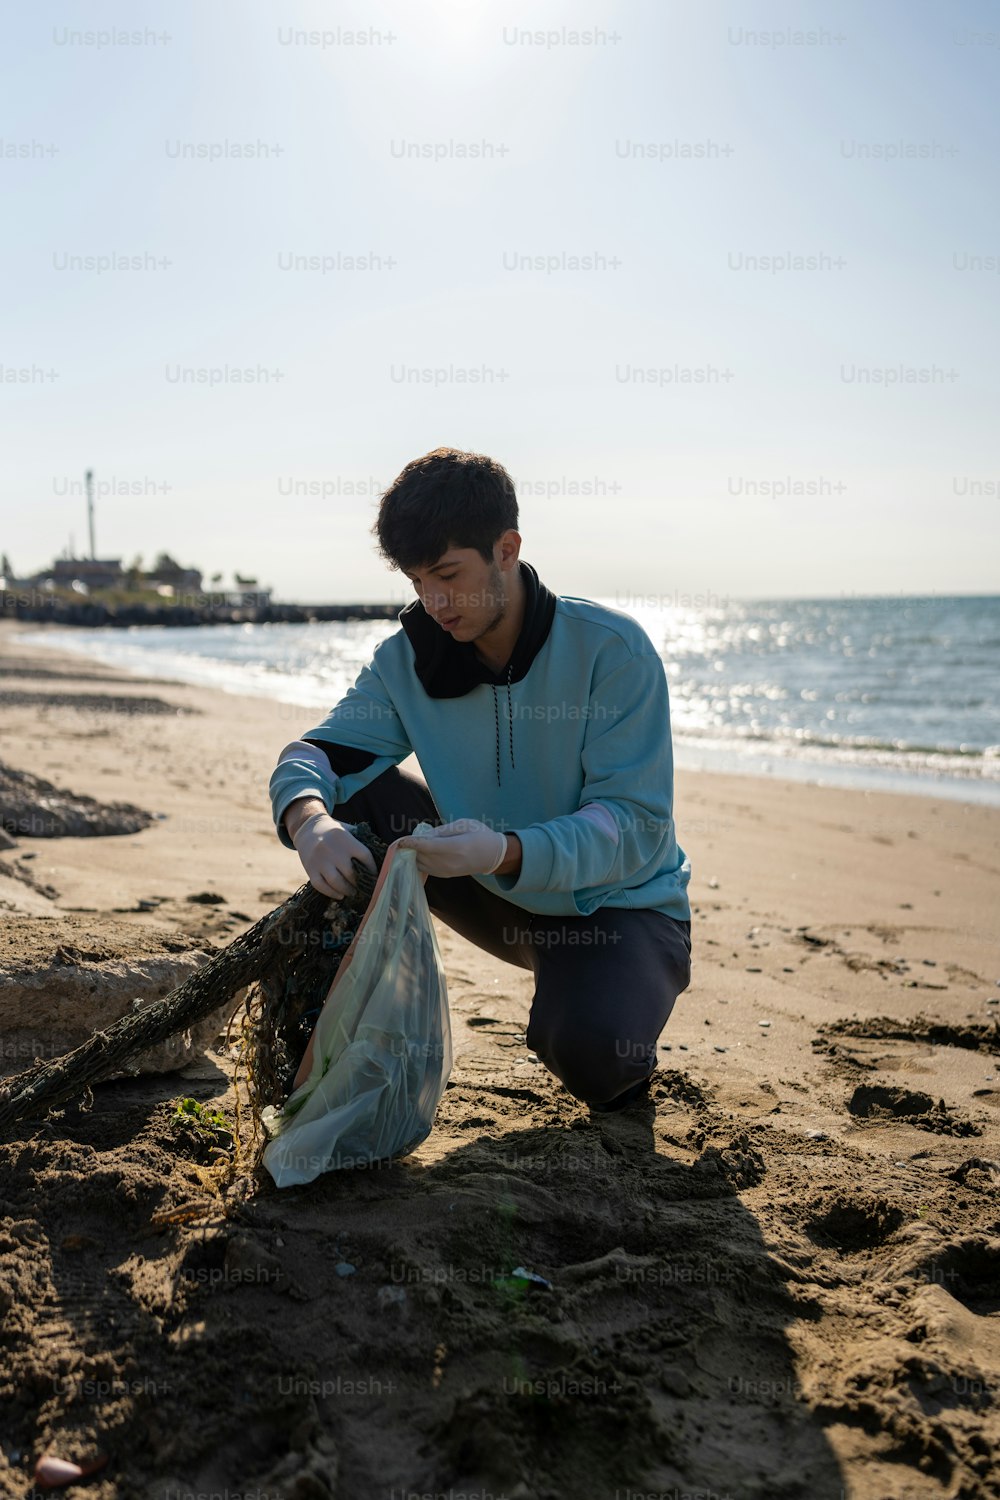 Un uomo inginocchiato su una spiaggia accanto a una borsa